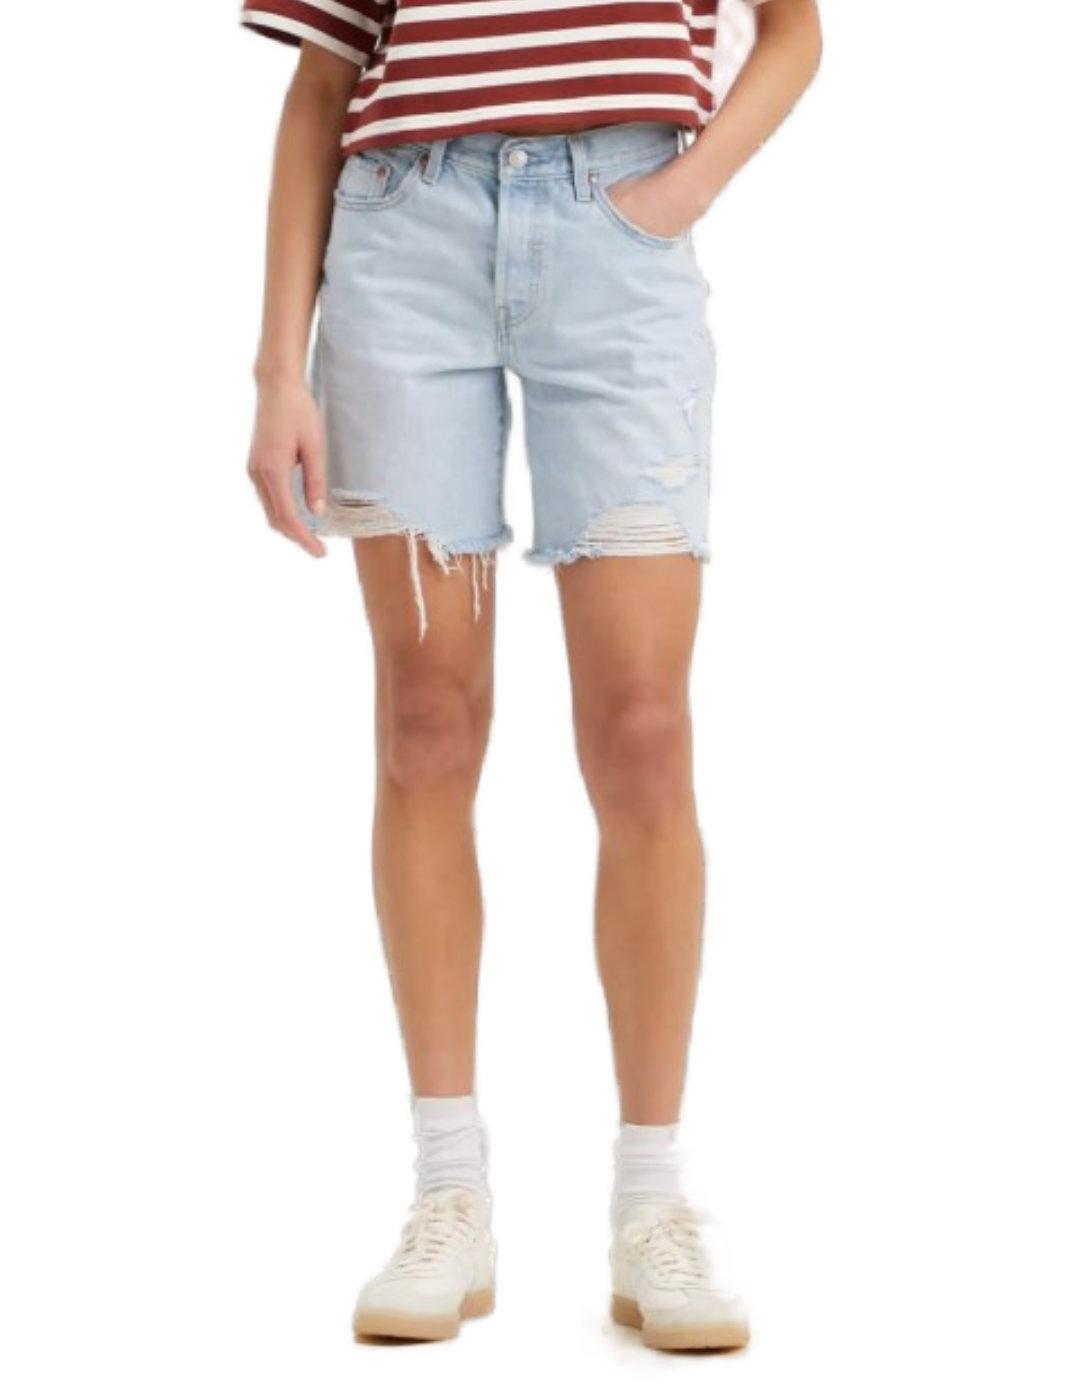 Shorts Levi´s 90s desflecados azul claro holgados de mujer